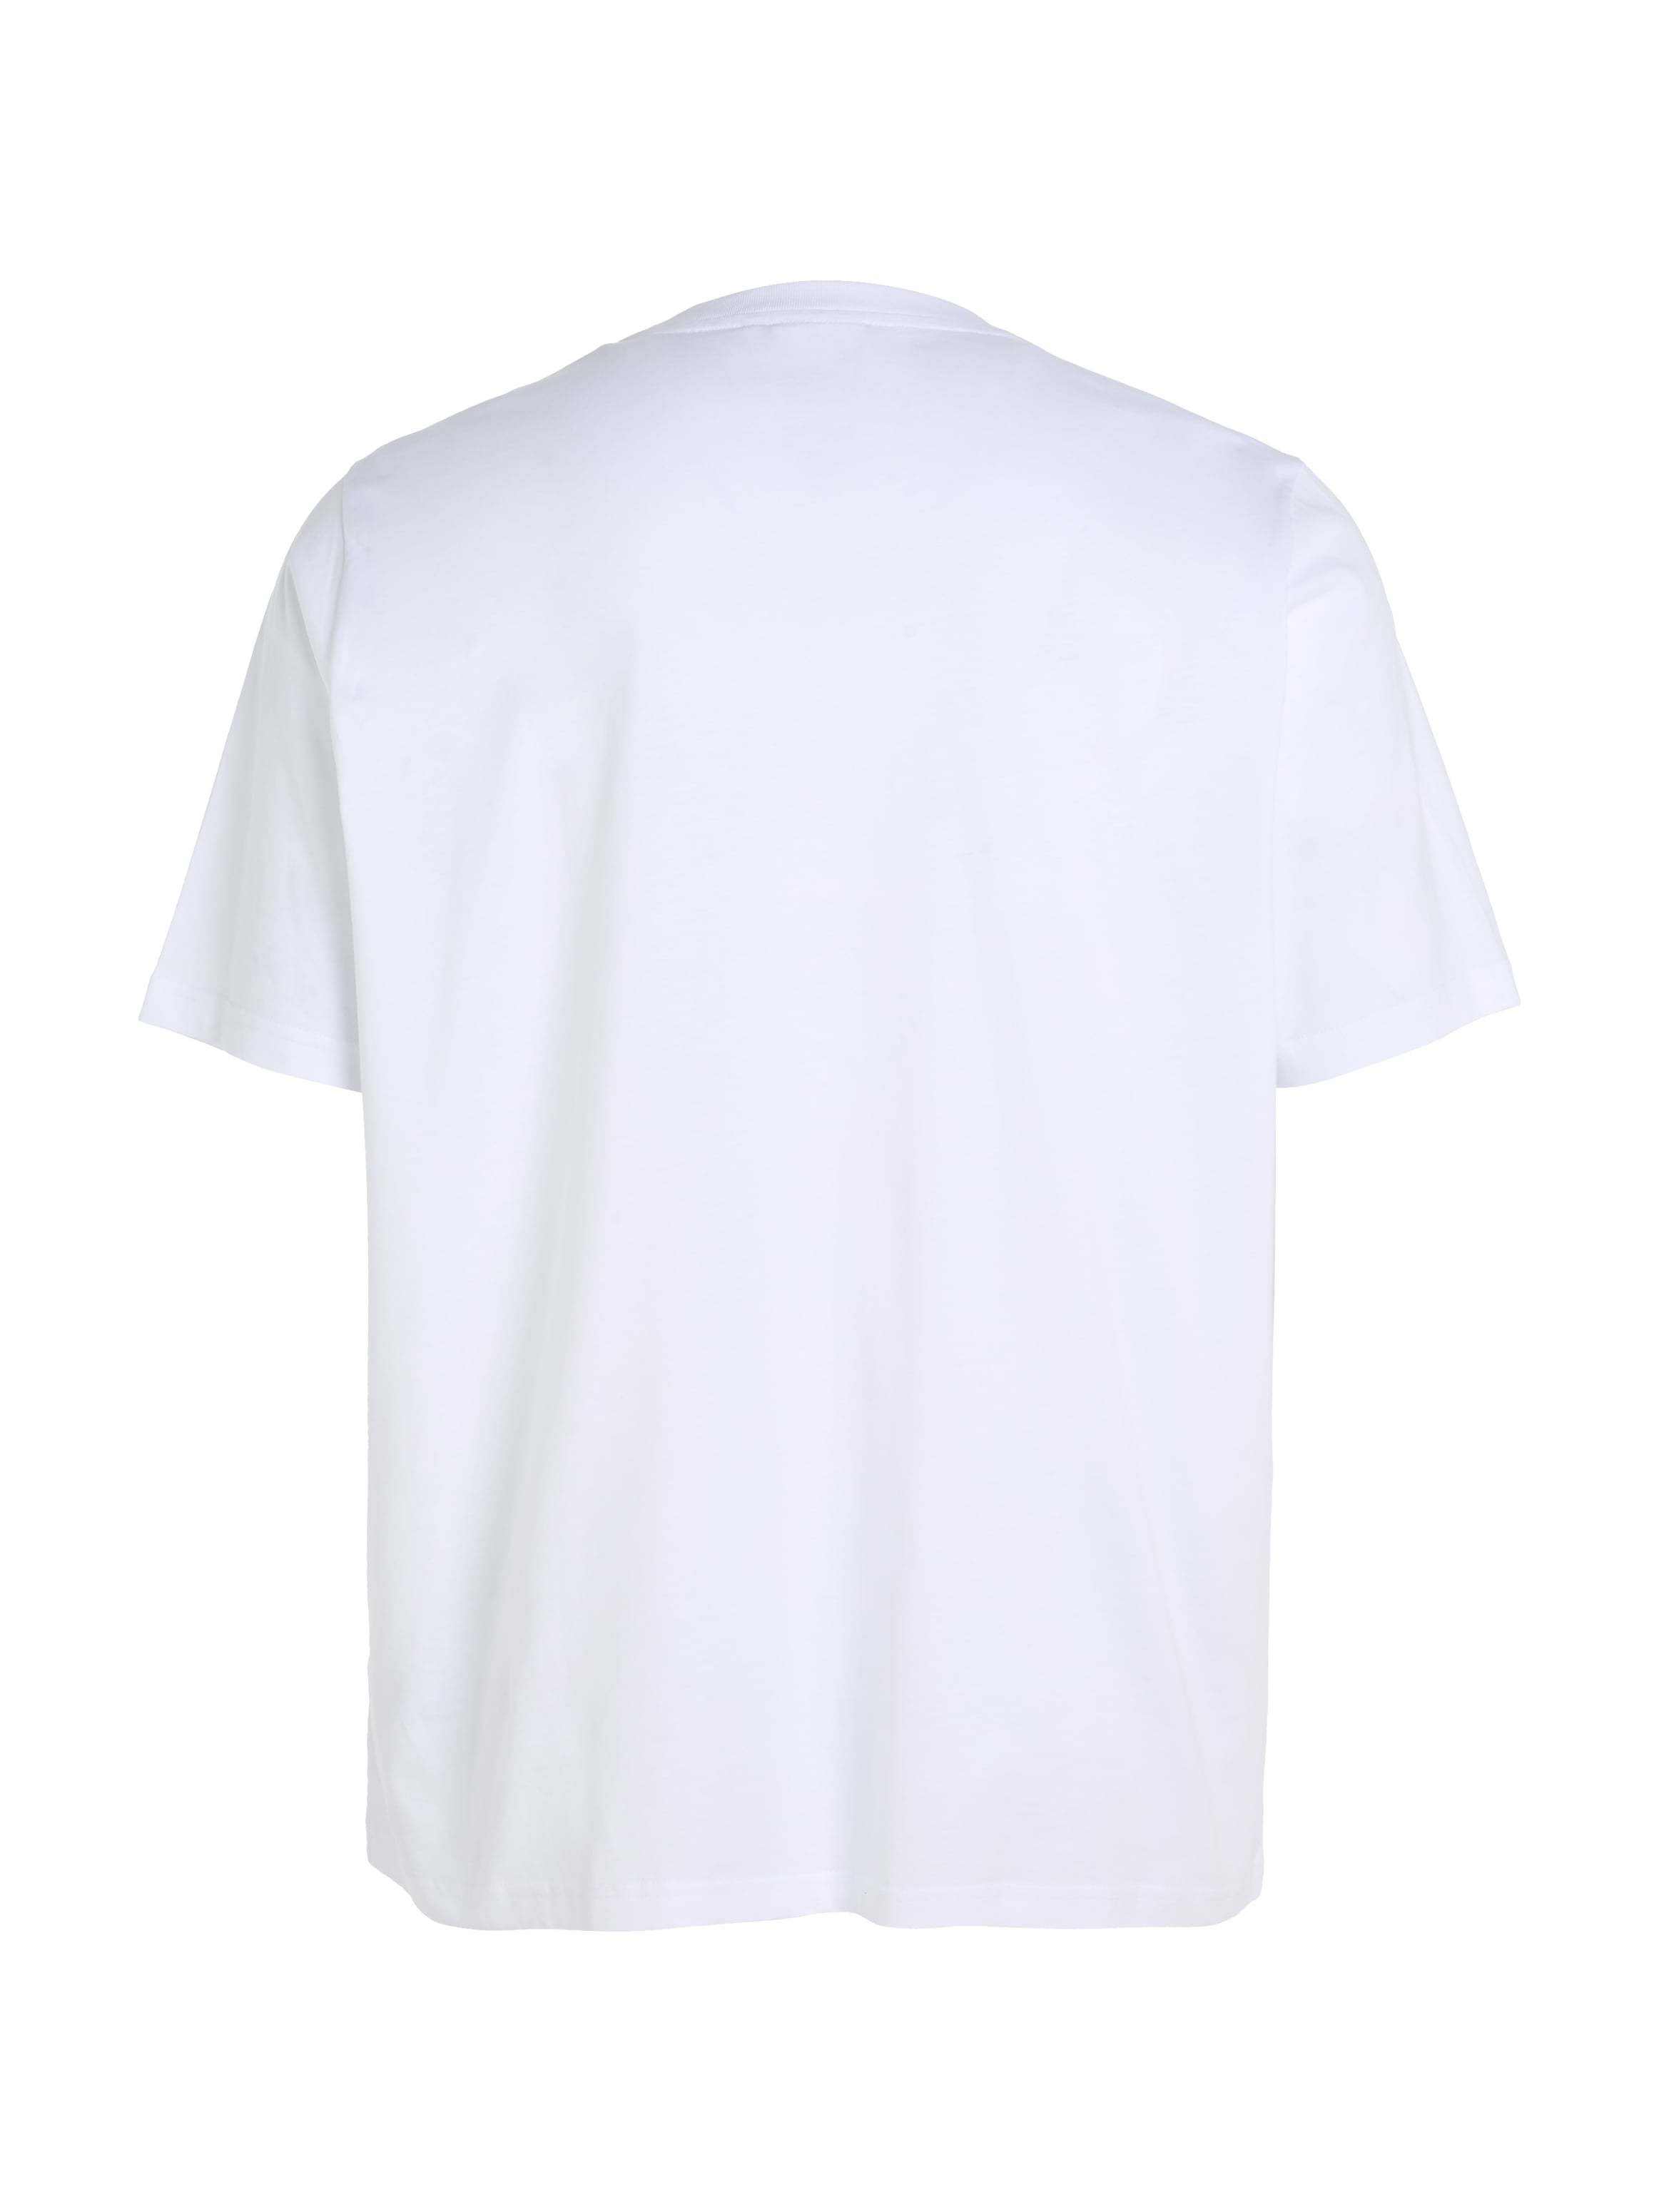 Calvin Klein Big&Tall T-Shirt »BT-HERO LOGO COMFORT T-SHIRT«, in großen Größen mit Logoschriftzug